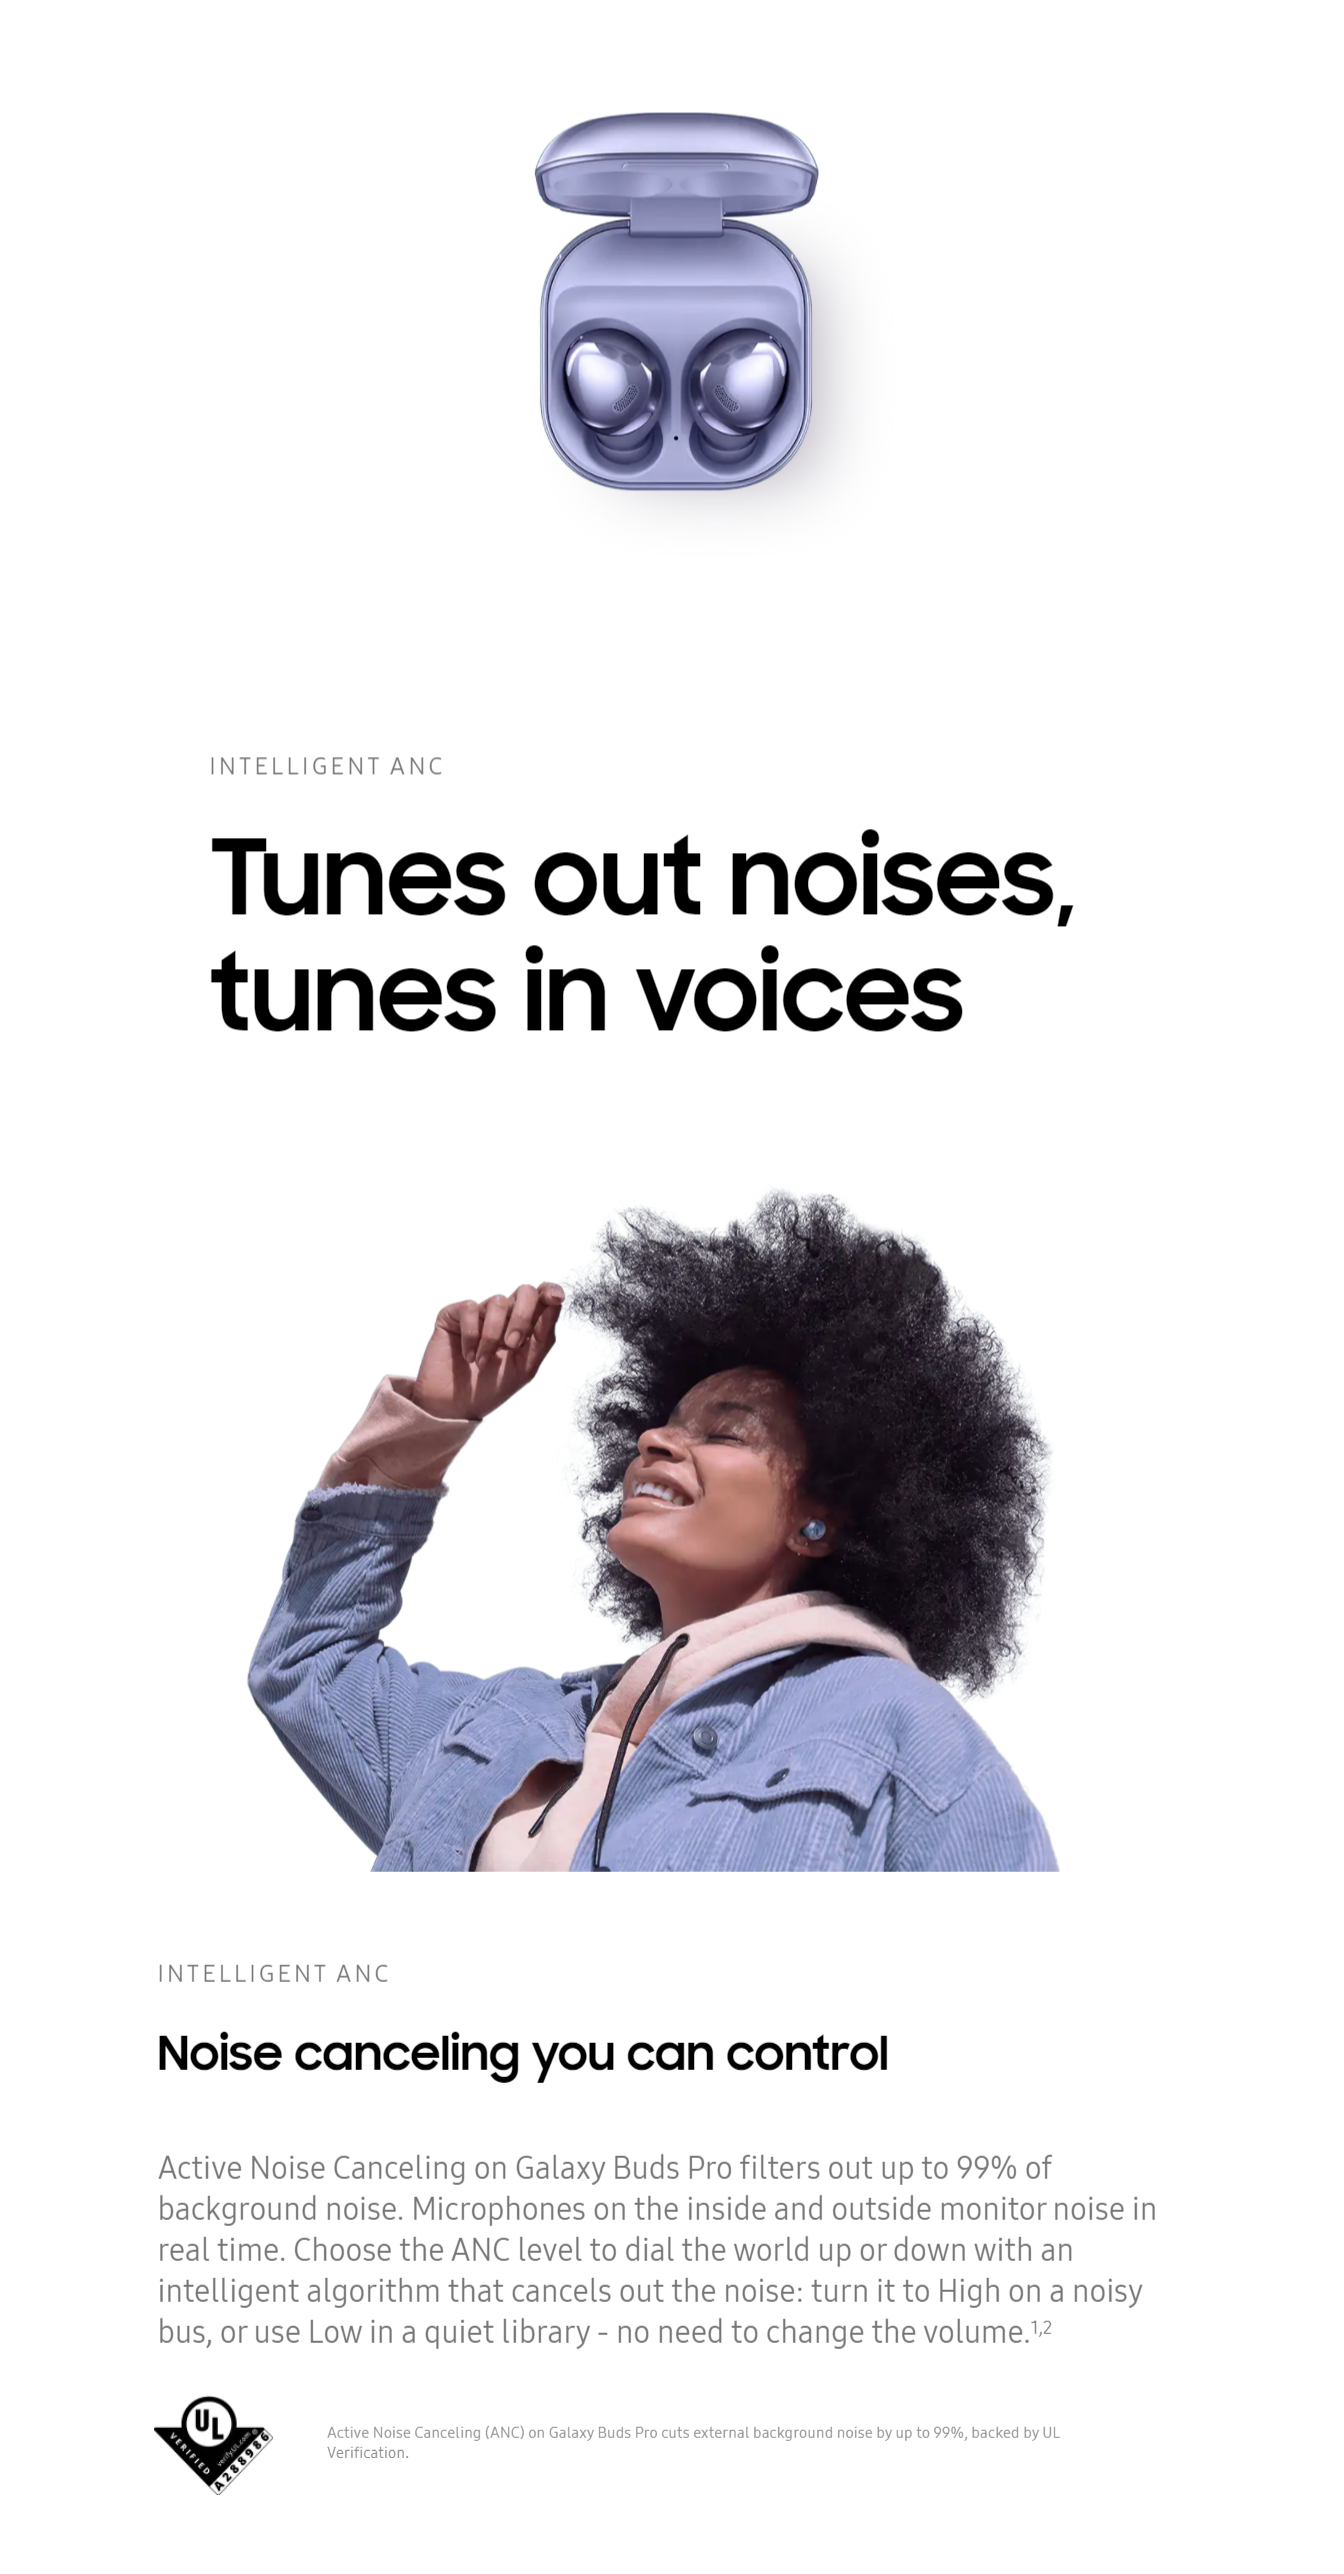 Tai nghe Galaxy Buds 2 sở hữu công nghệ giảm tiếng ồn nền tuyệt vời, giúp bạn tận hưởng những bài hát và cuộc gọi chất lượng cao mà không bị phân tâm bởi tiếng ồn xung quanh. Bạn sẽ được chìm đắm vào âm nhạc và tập trung vào cuộc trò chuyện chỉ với tai nghe này. Hãy chỉnh ngay tai nghe Galaxy Buds 2 và trải nghiệm khả năng giảm tiếng ồn nền đỉnh cao.